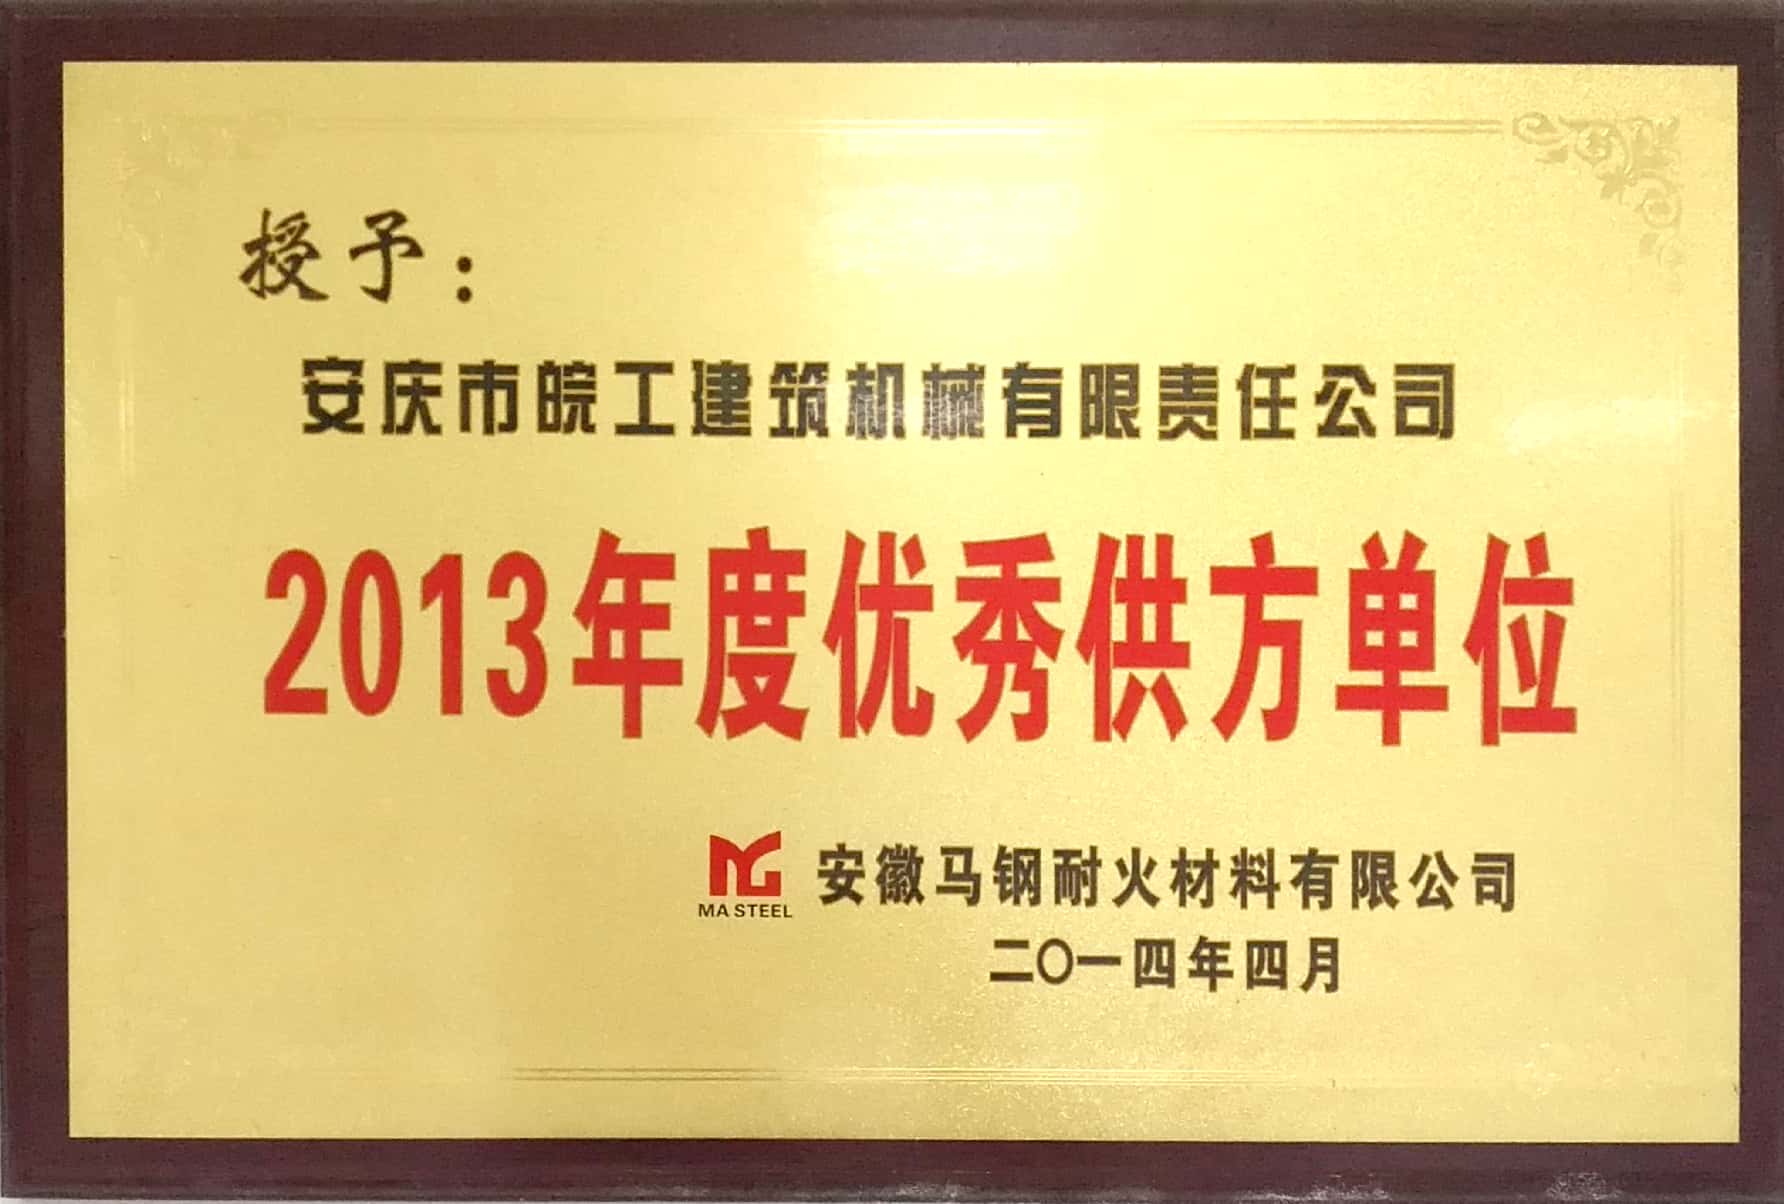 安徽馬鋼耐火材料授予2013年度優秀供方單位